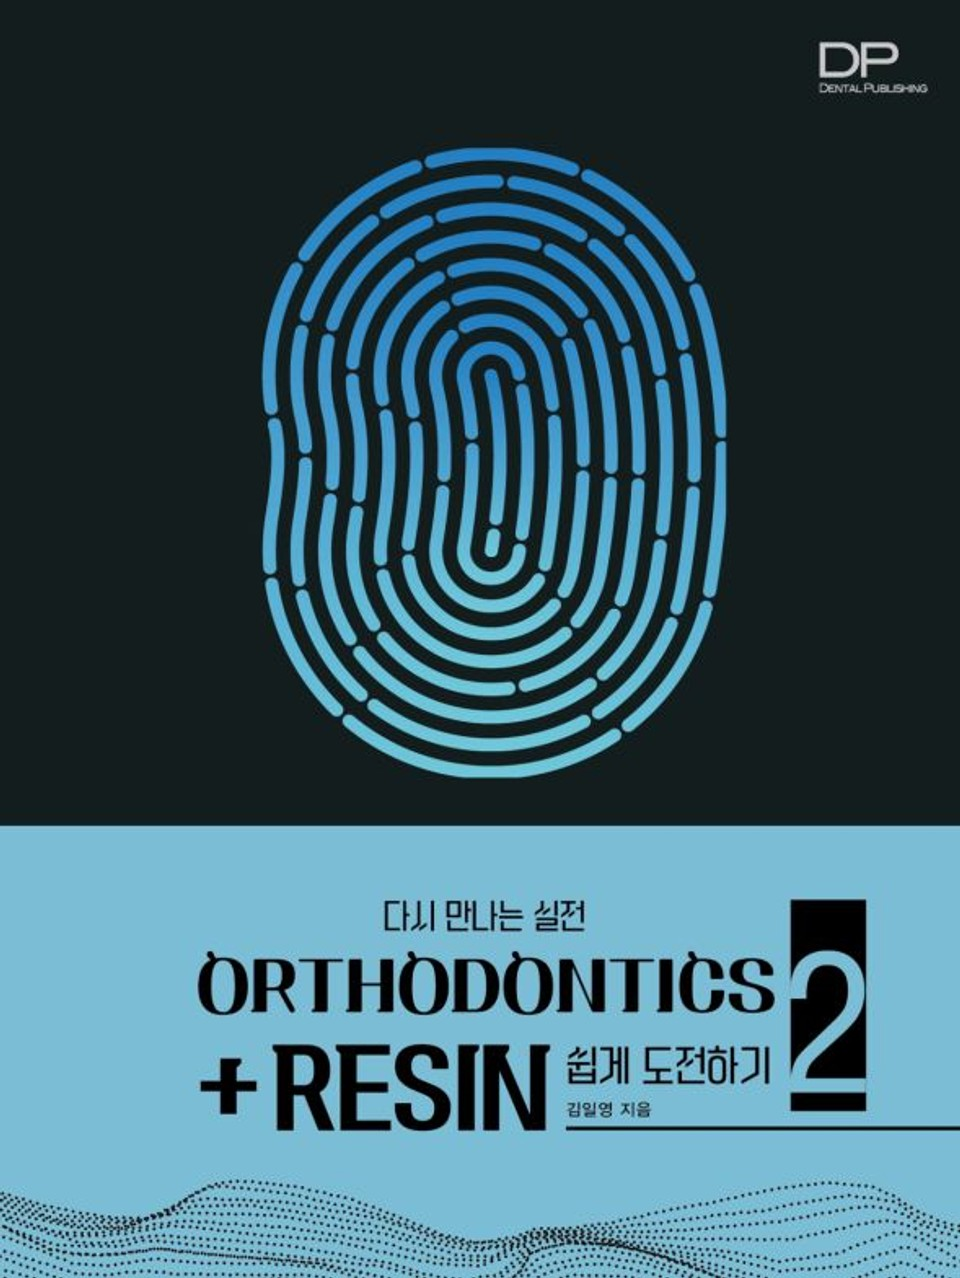 Orthodontics + resin 쉽게 도전하기 2  다시 만나는 실전